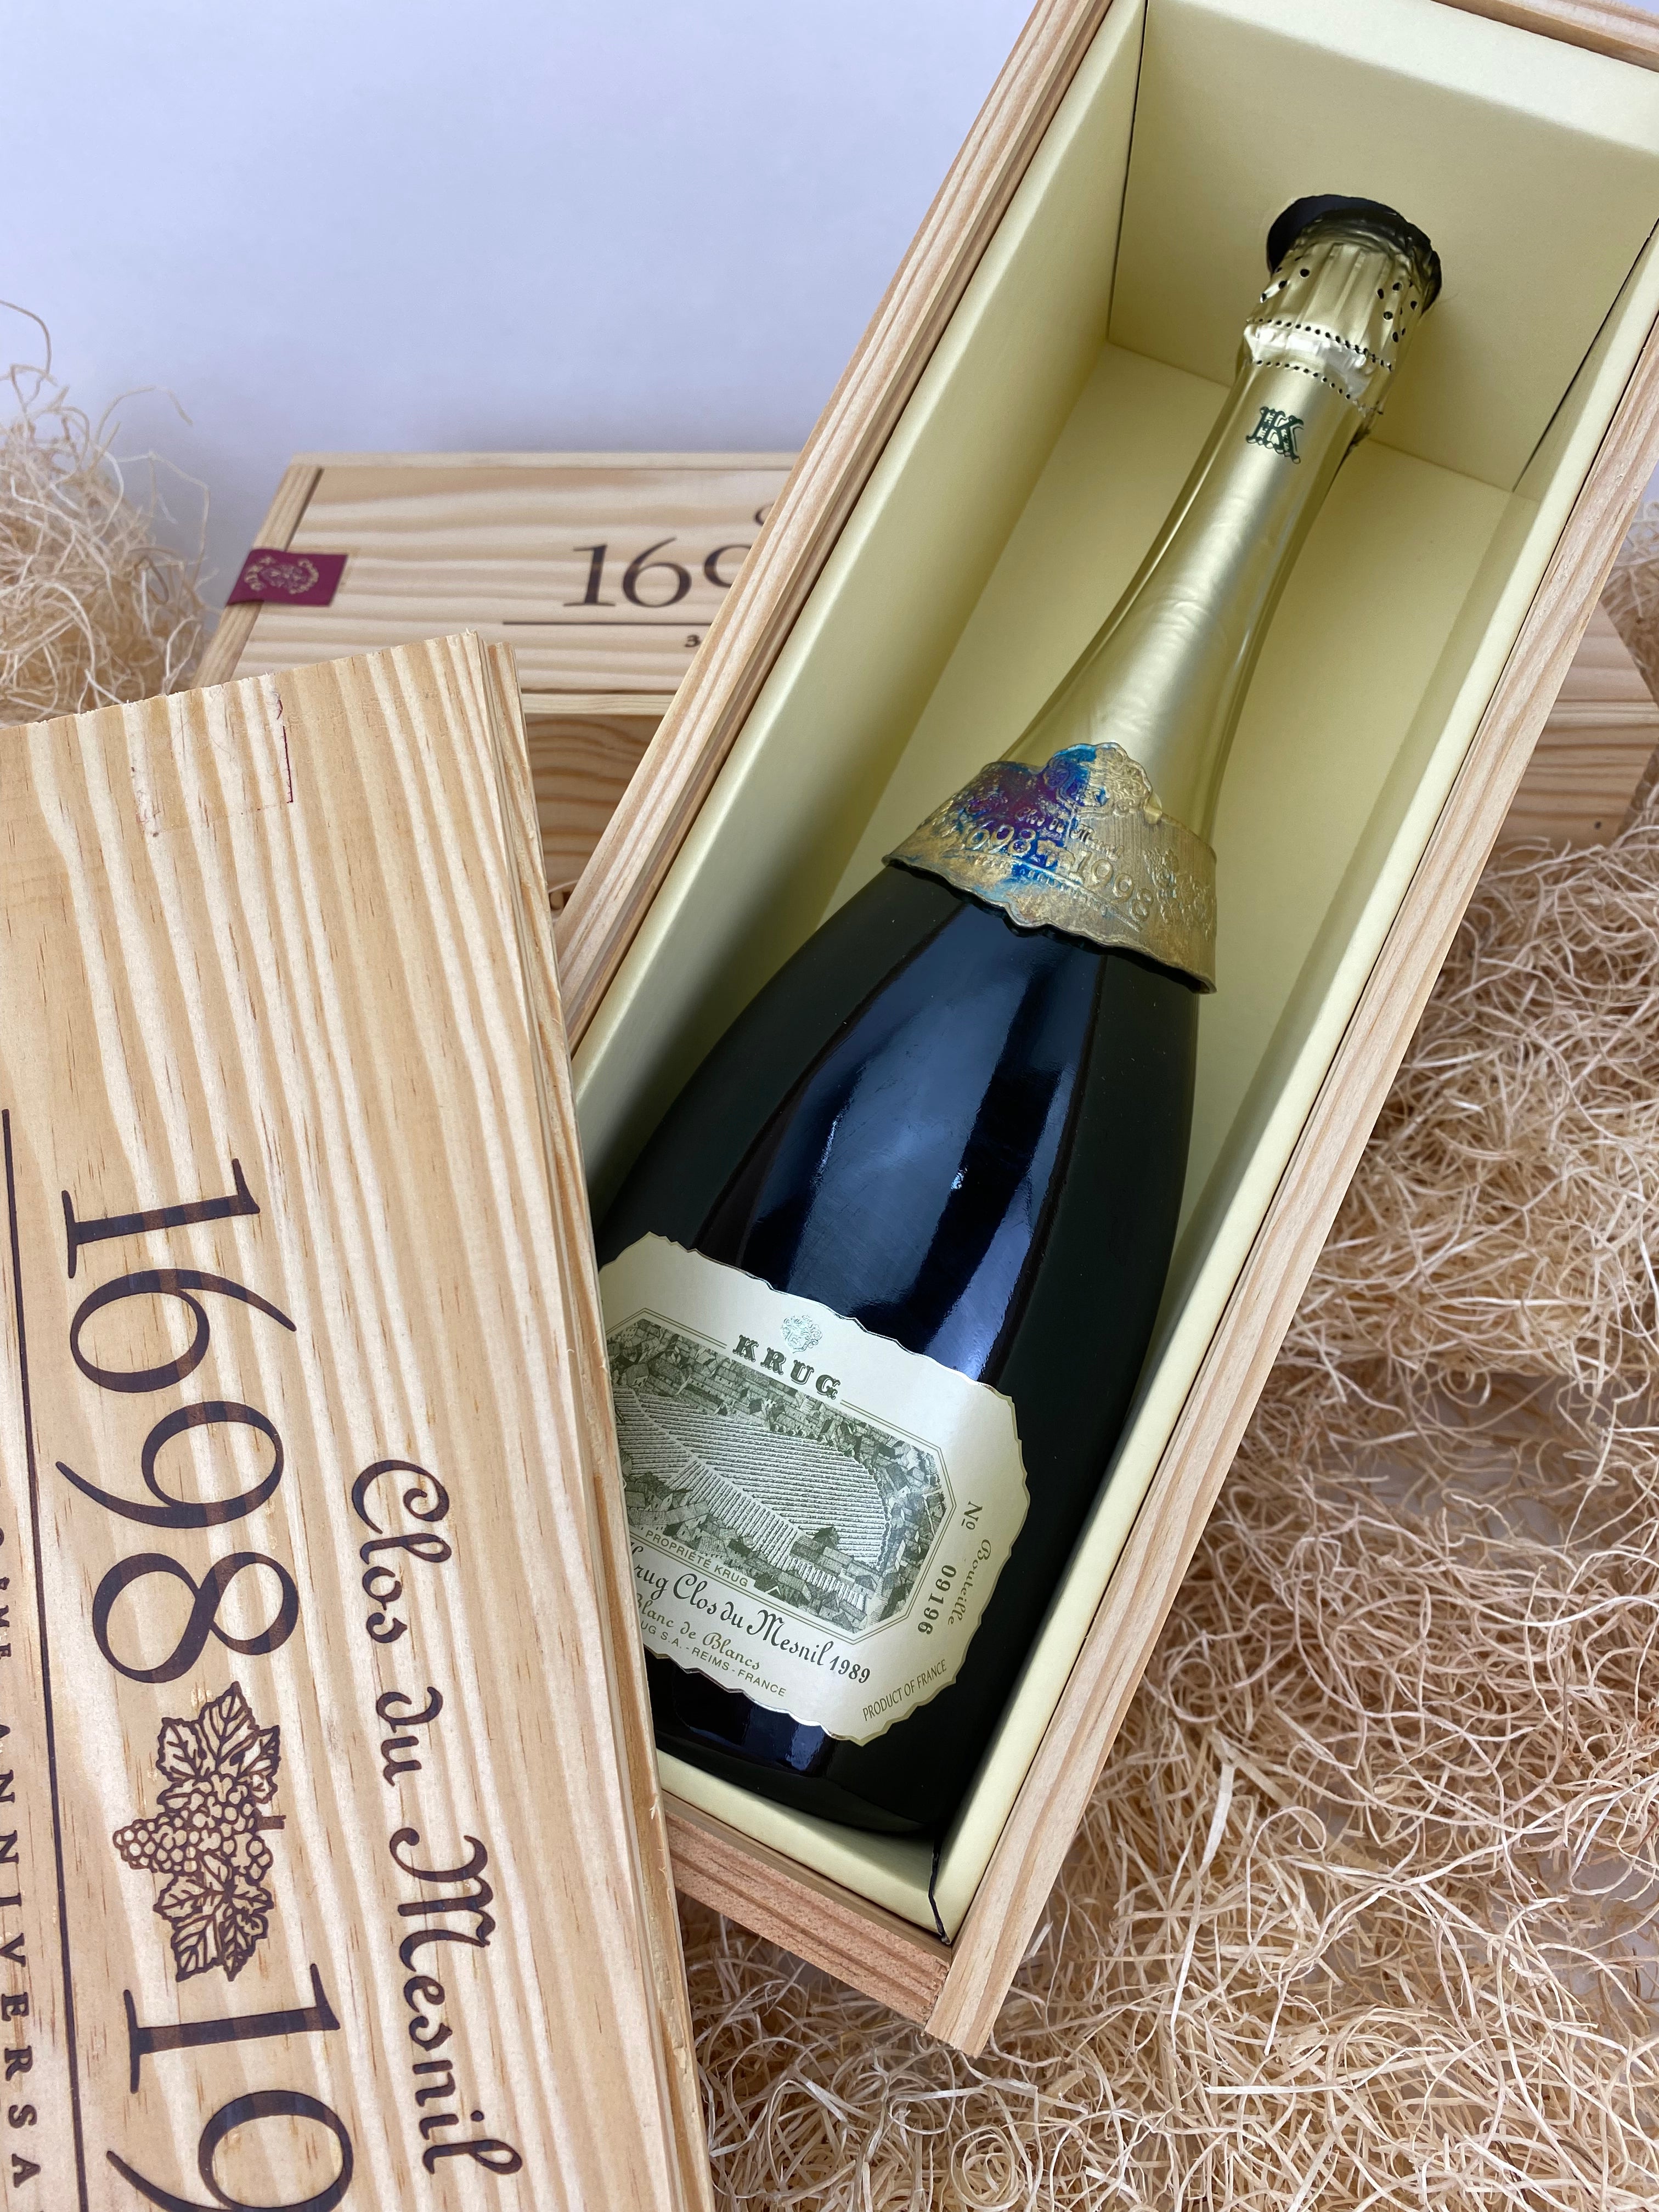 Krug 2000 Vintage Brut Champagne - 750 ml